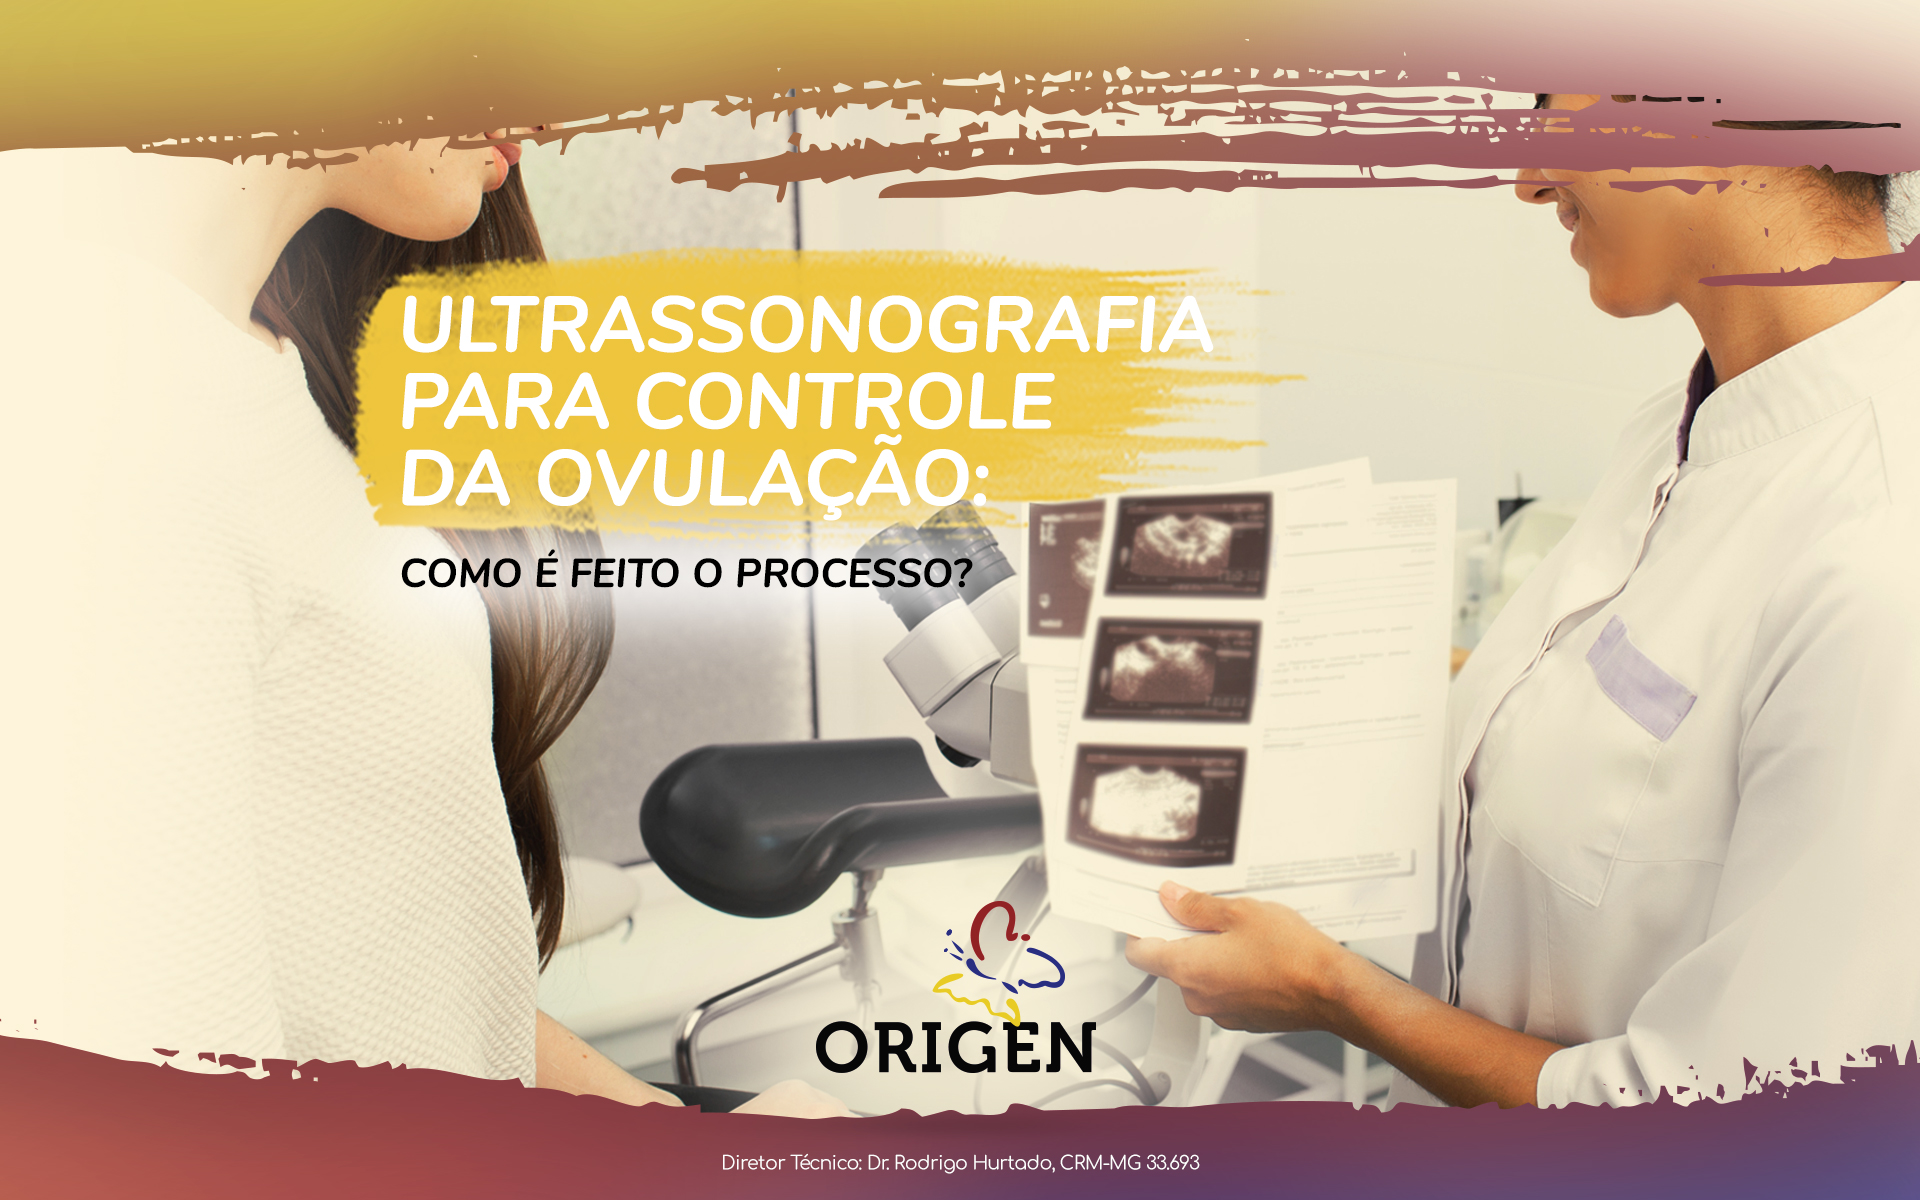 Ultrassonografia para controle da ovulação: como é feito o processo?